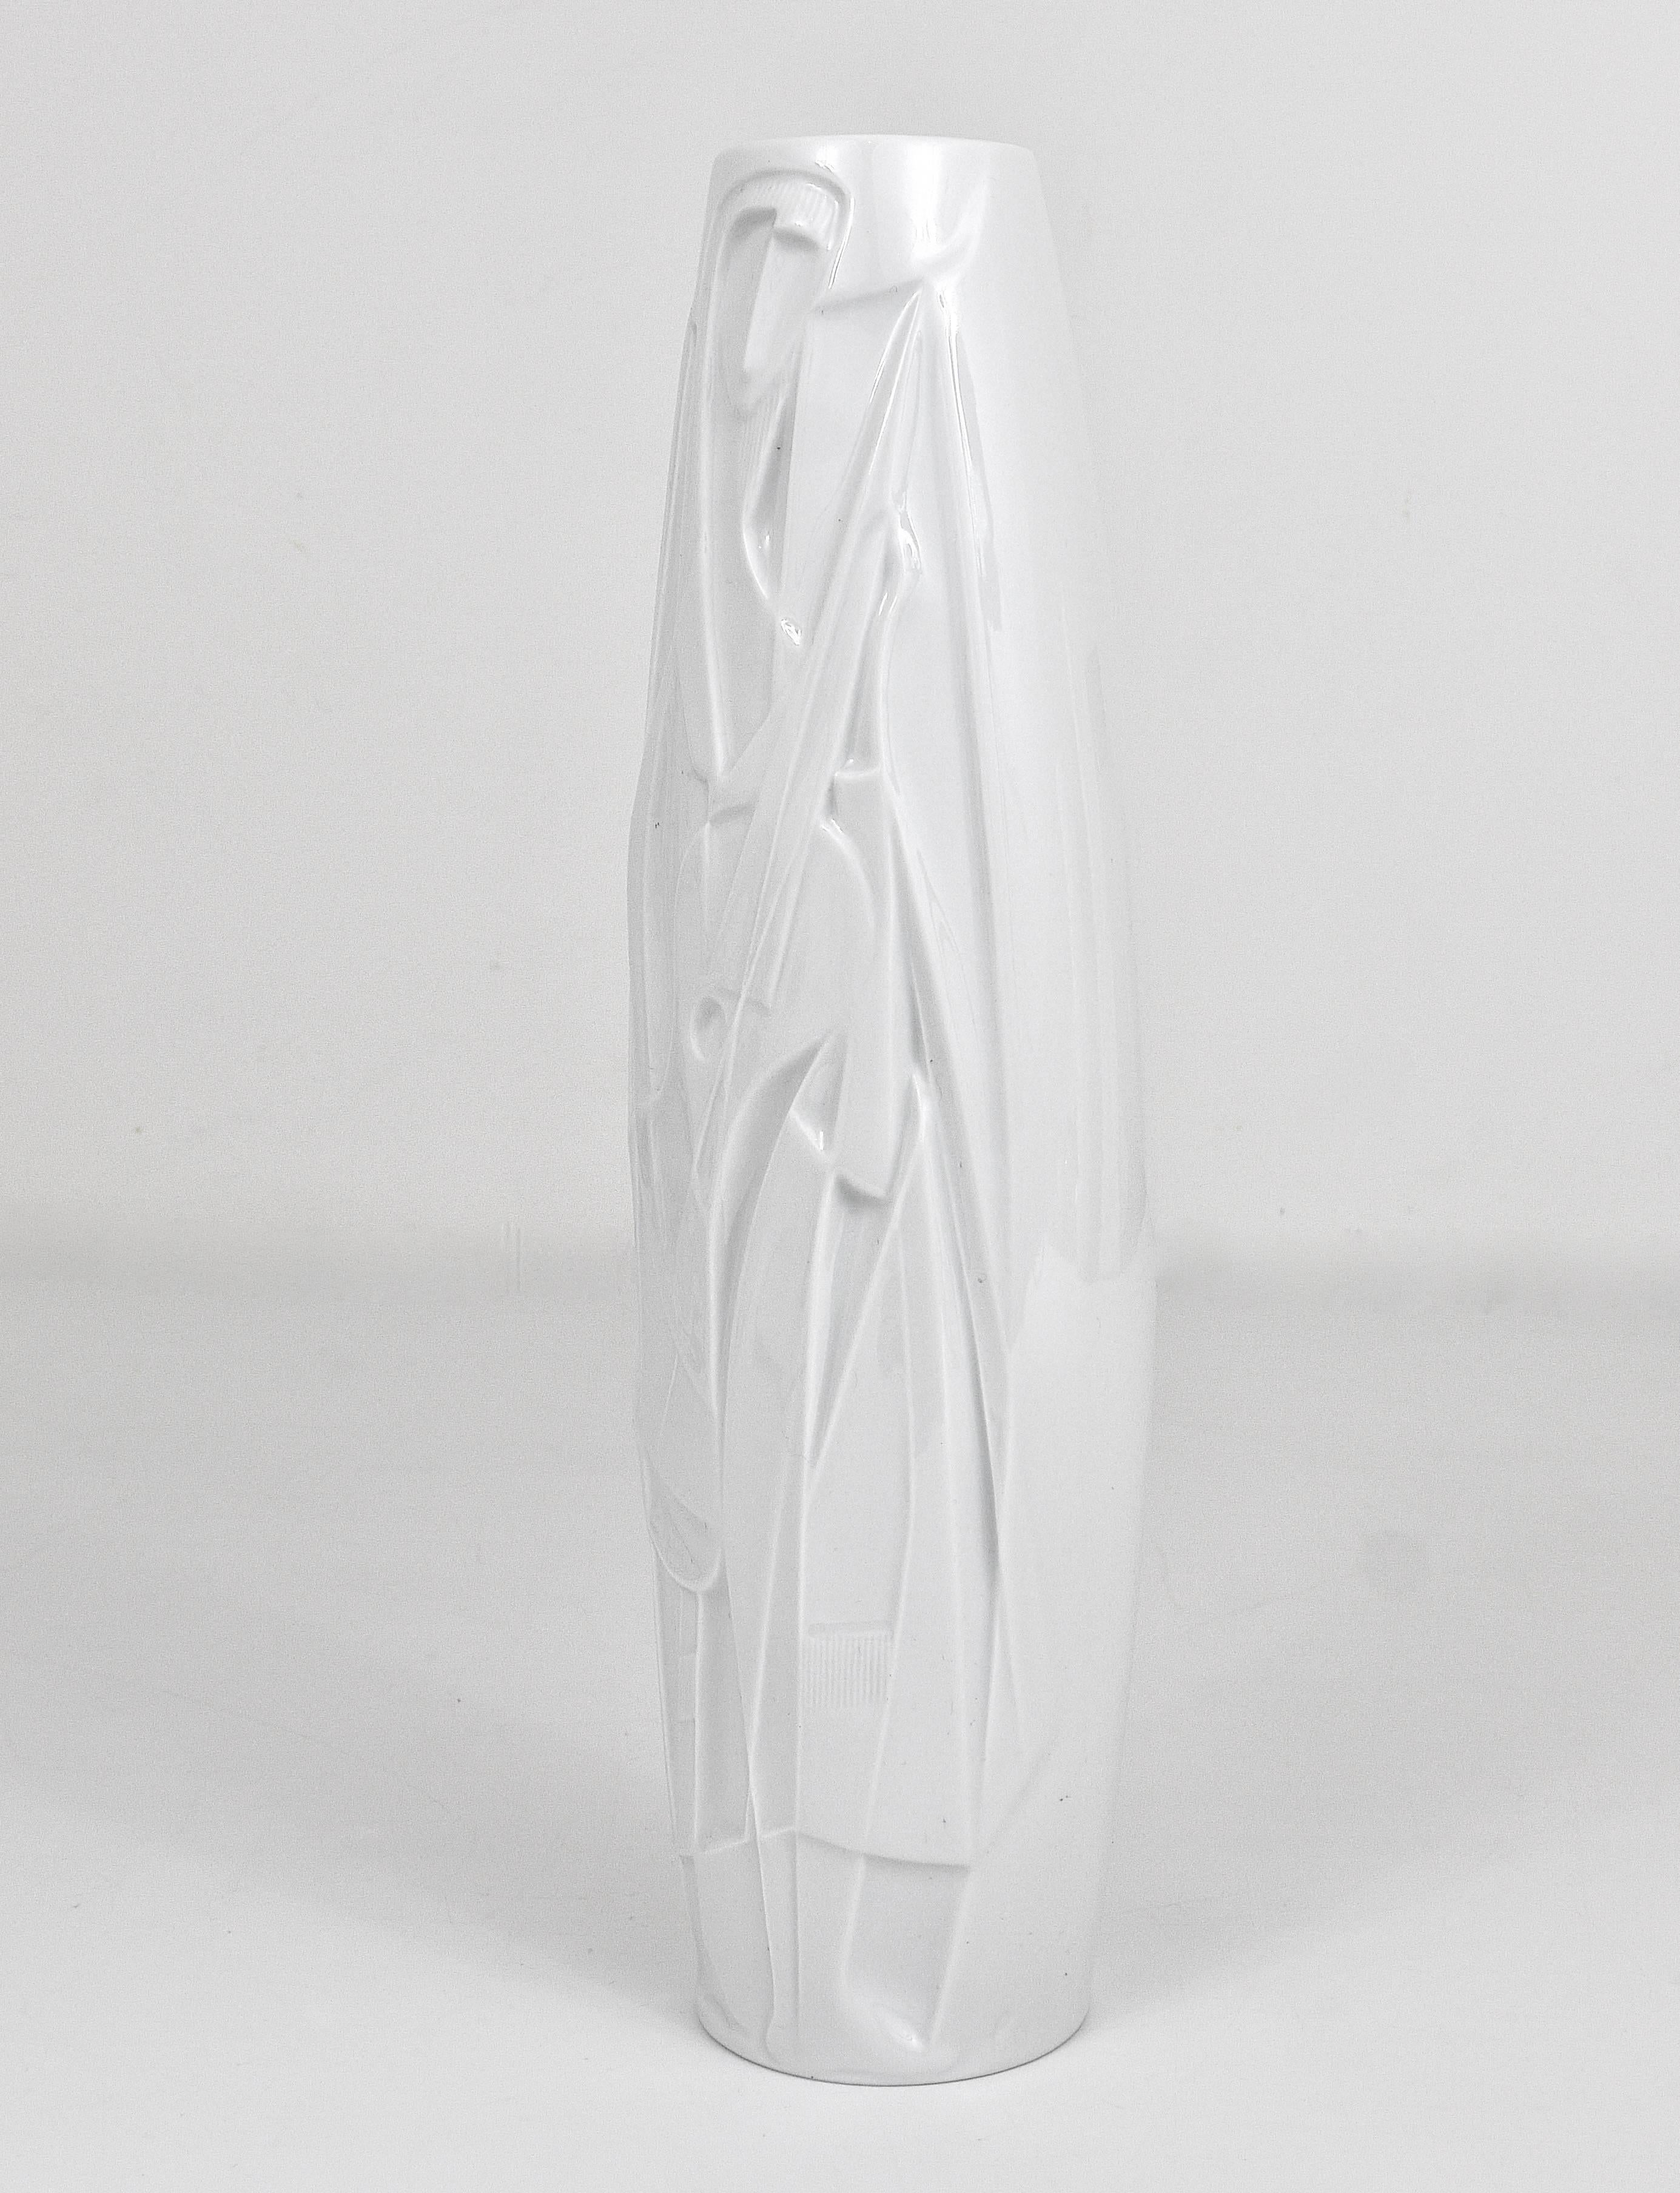 Mid-Century Modern White Relief Op Art Porcelain Vase, Cuno Fischer, Rosenthal Studio-Linie, 1960s For Sale